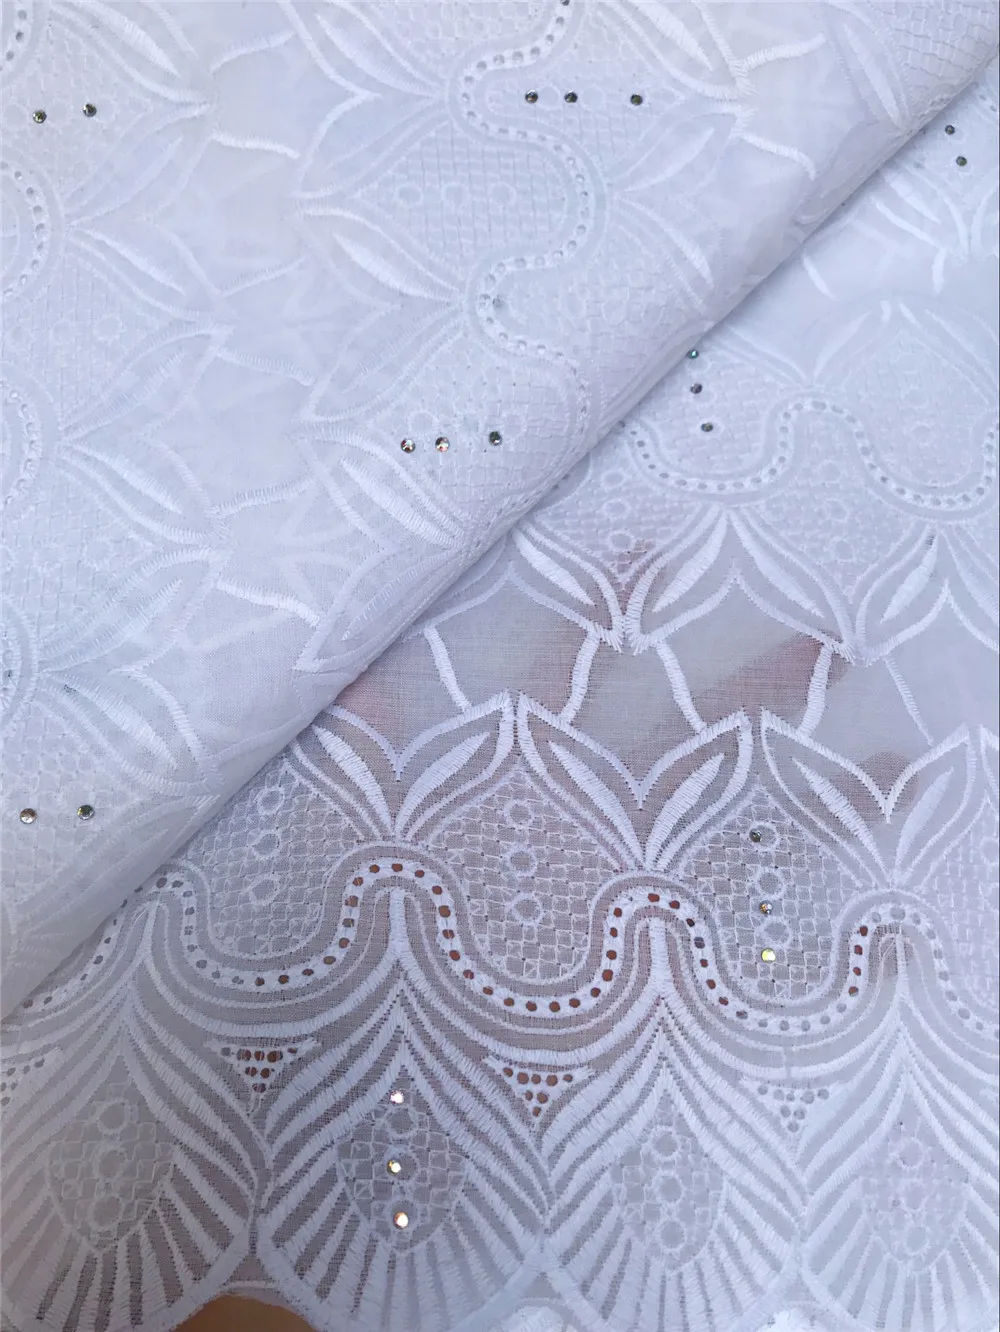 Швейцарская вуаль кружево в Швейцарии в нигерийском стиле ткань высокое качество белая хлопковая ткань для маленьких dress5yard/lo5815